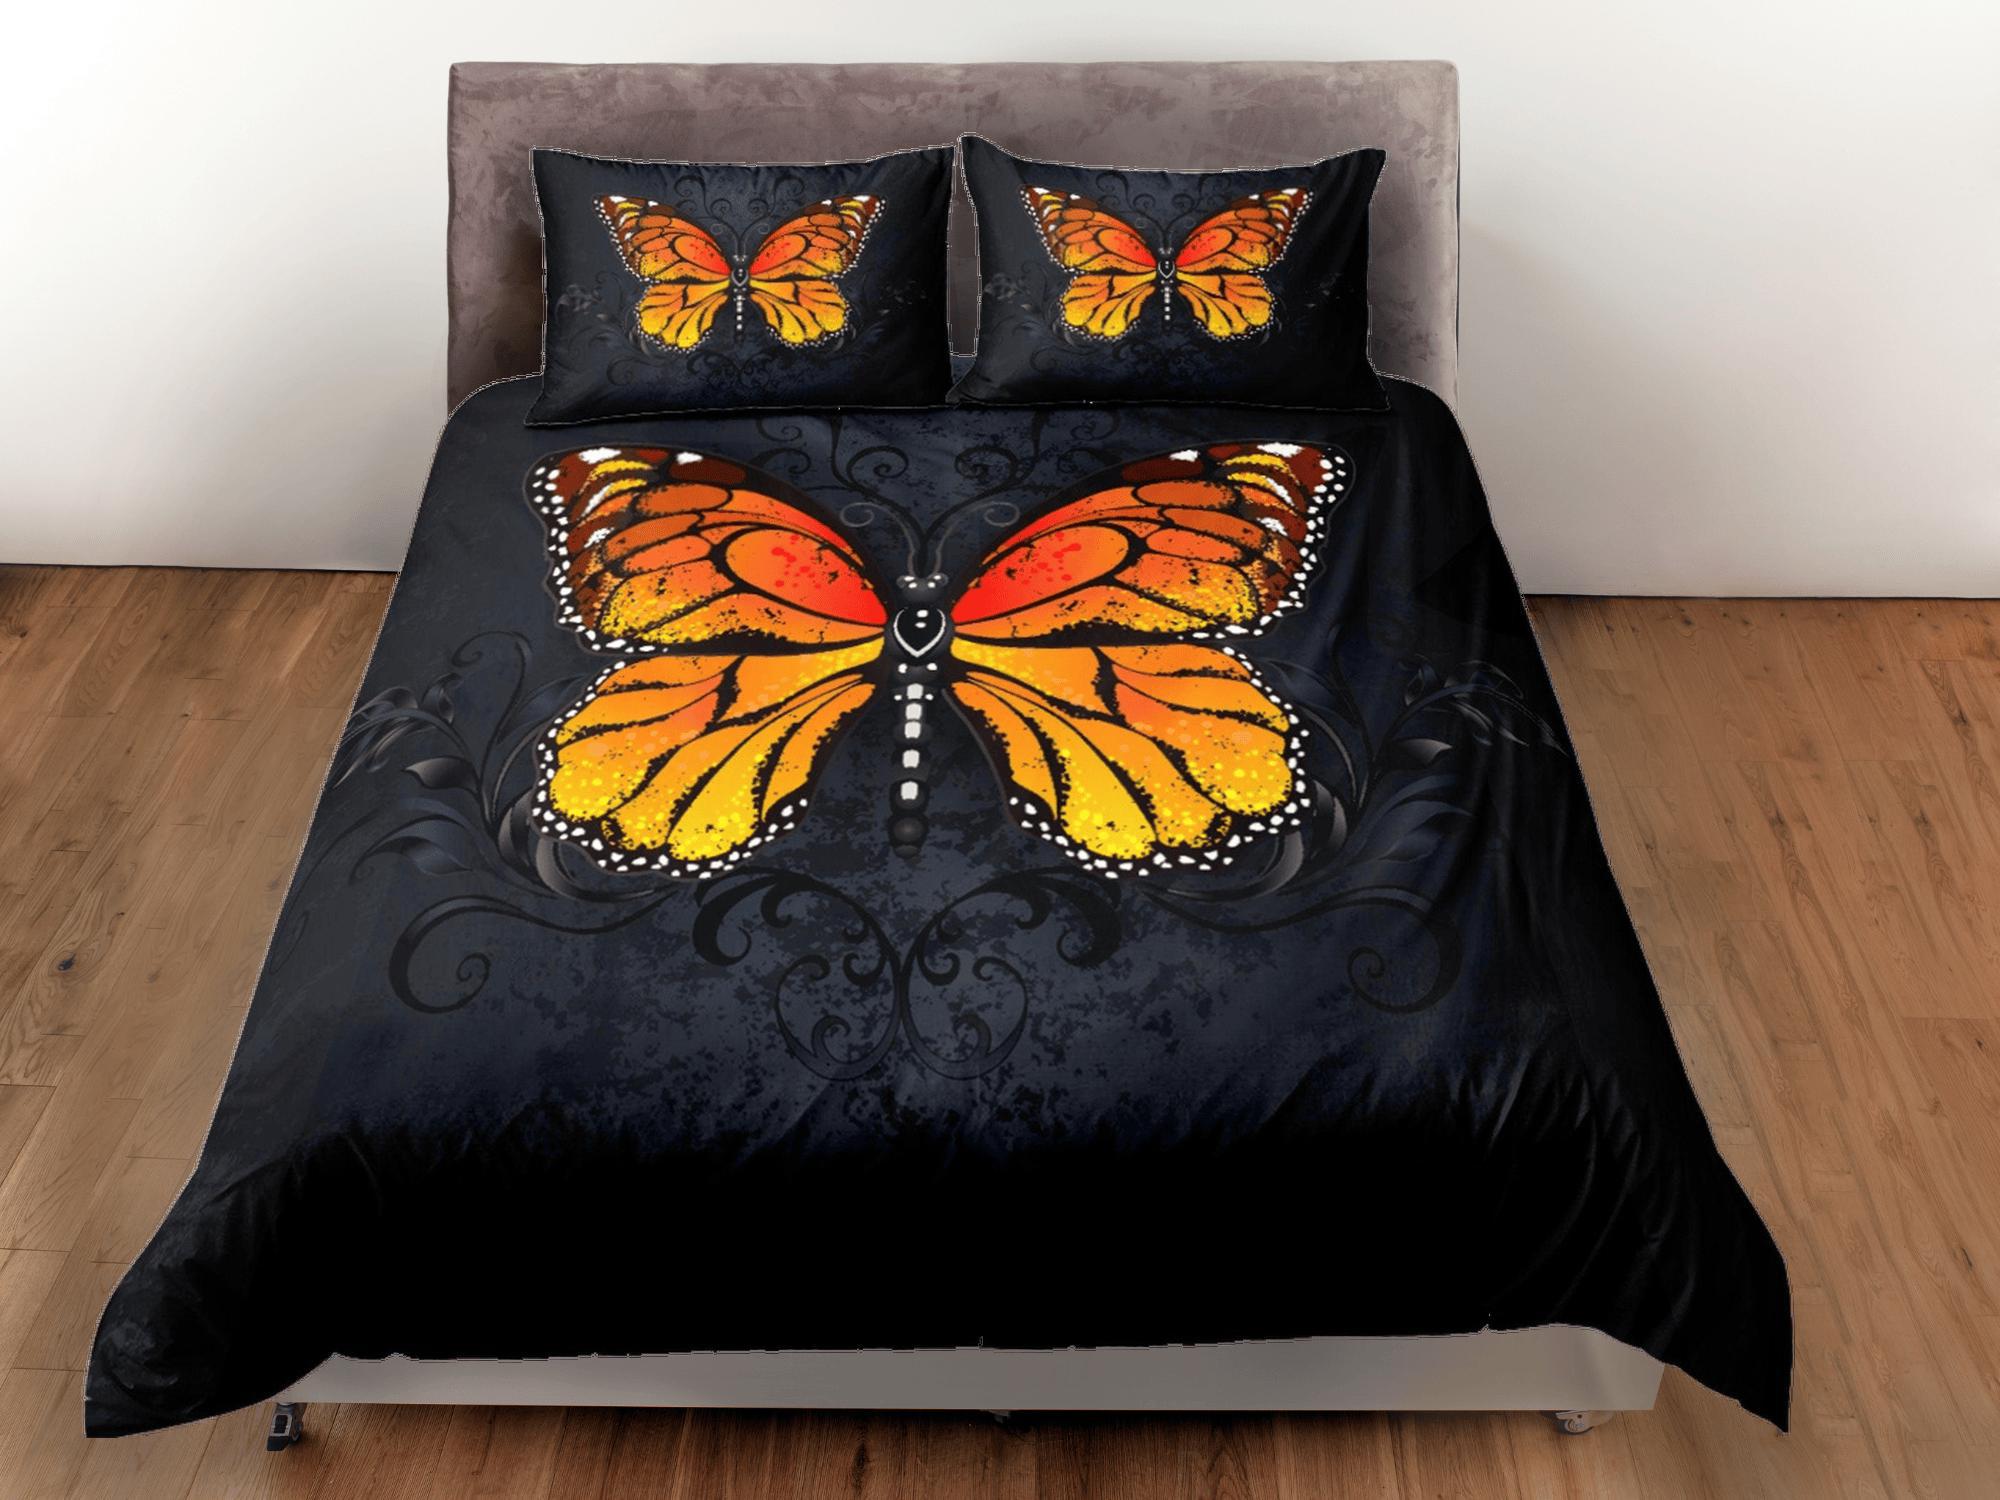 daintyduvet Monarch Butterfly Black Duvet Cover Set Unique Bedspread, Dorm Bedding Pillowcase